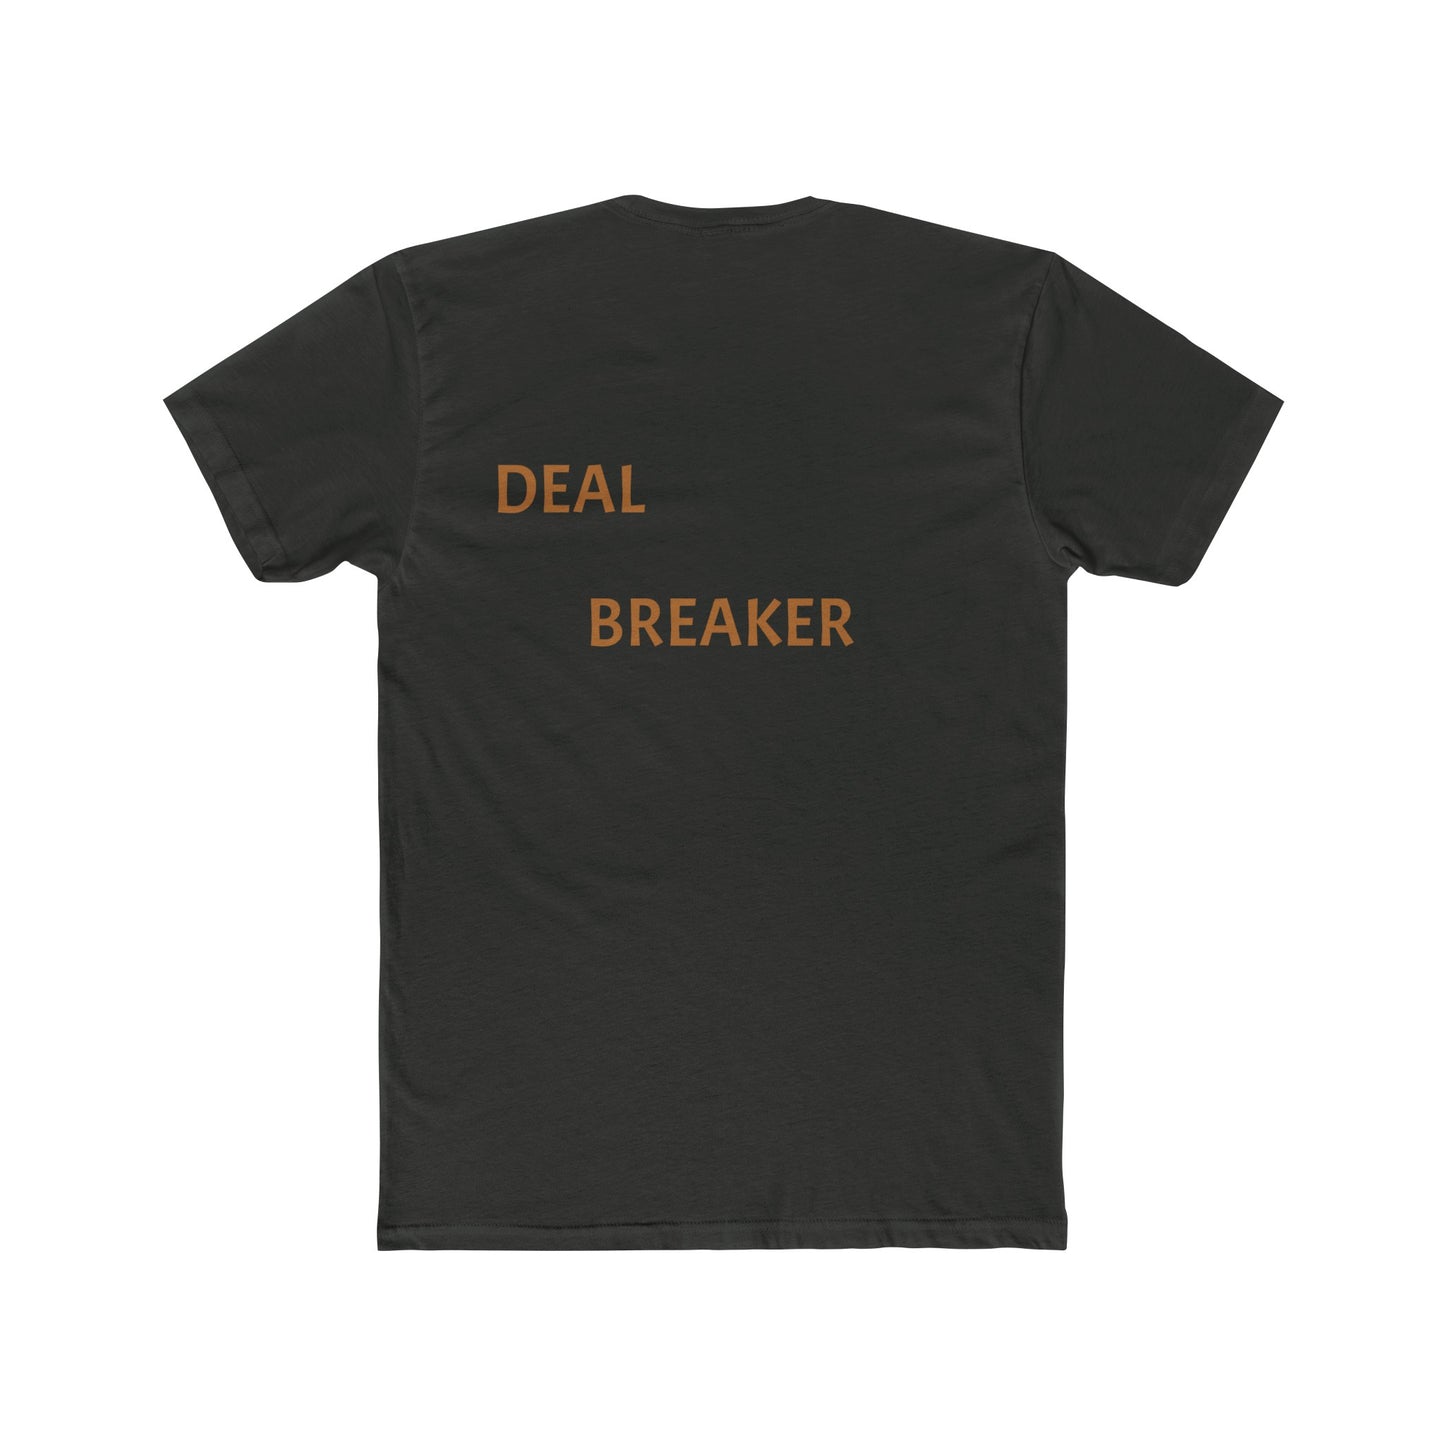 Deal Breaker: Men's Cotton Crew Tee